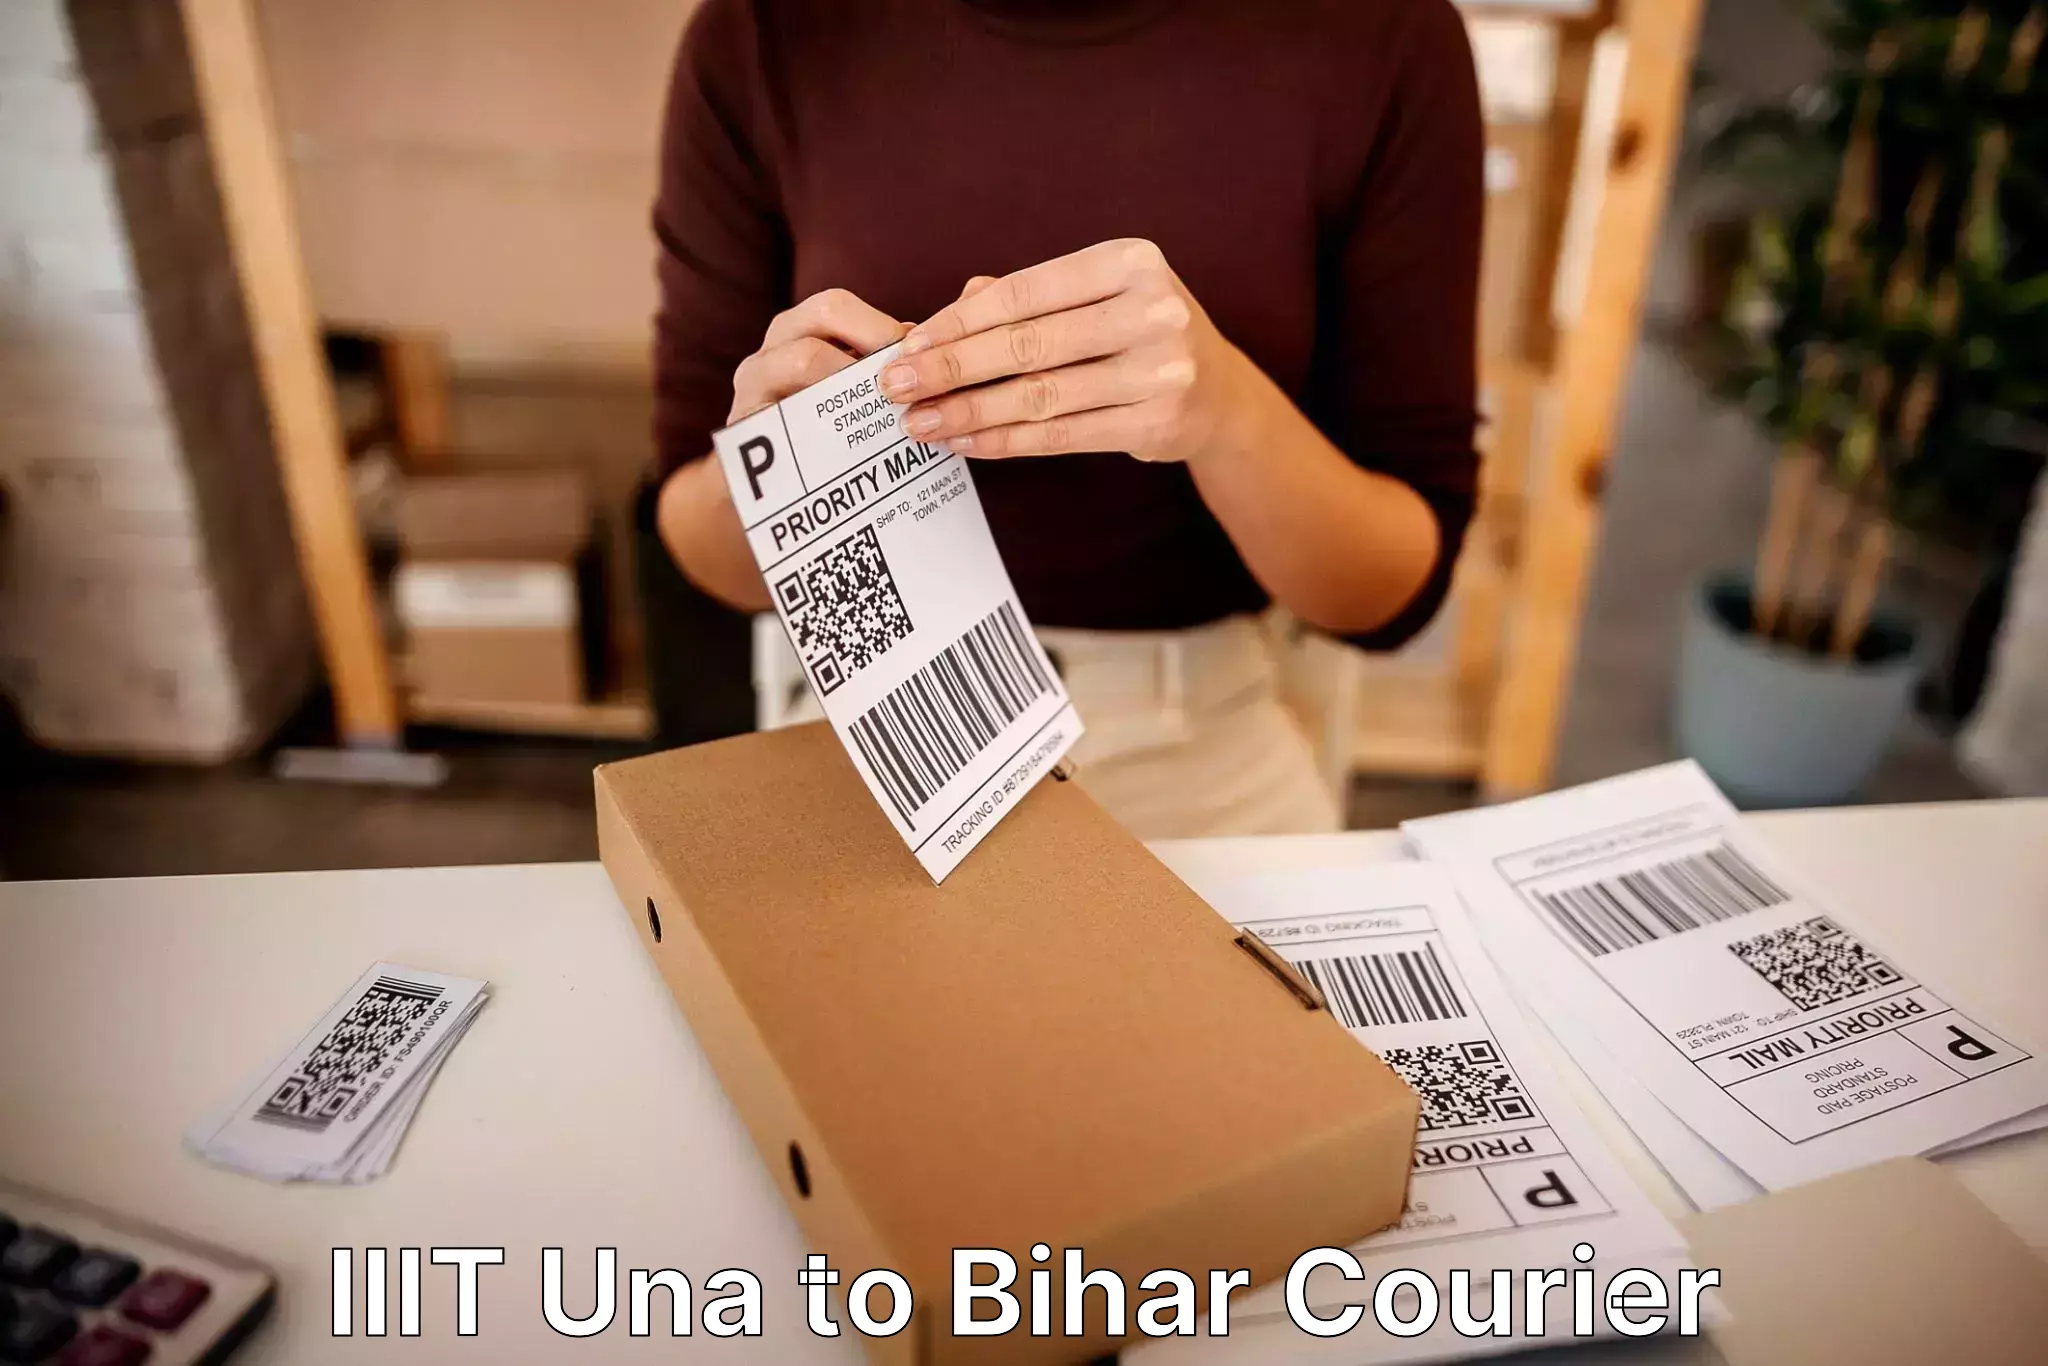 Furniture relocation services IIIT Una to Bihar